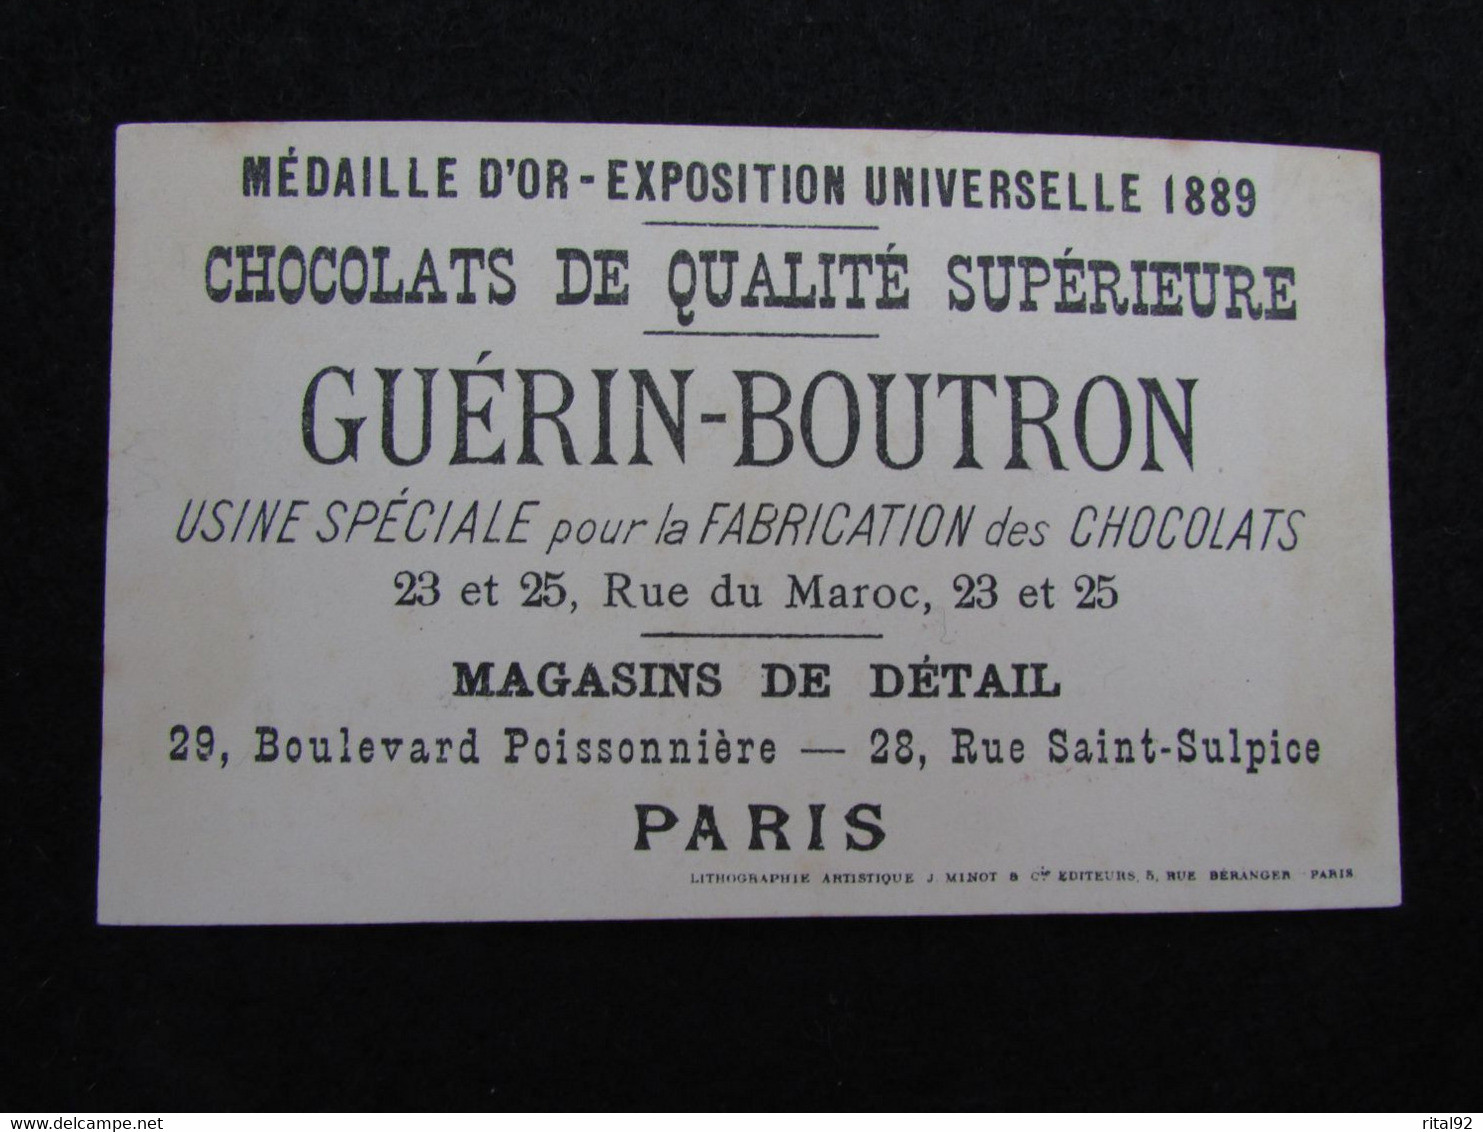 Chromo CHOCOLAT GUERIN-BOUTRON - Guerin Boutron